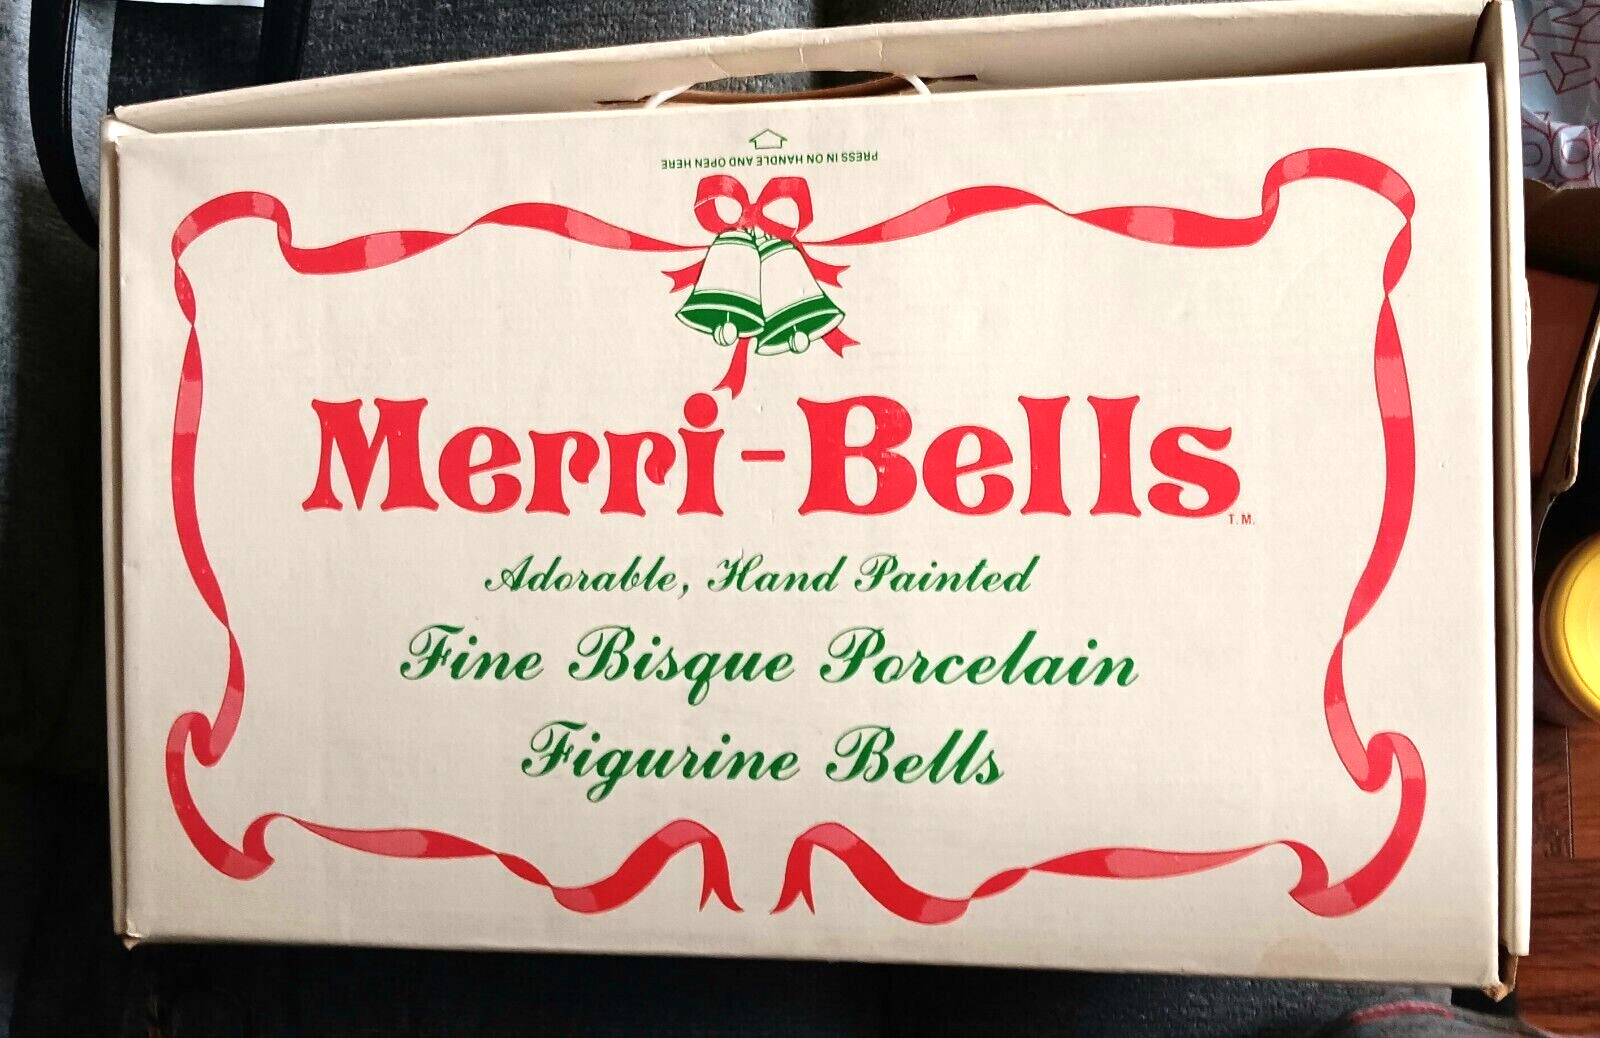 Merri-Bells Set Of 11 Fine Bisque Porcelain Figurine Ornaments Bells Jasco 1978